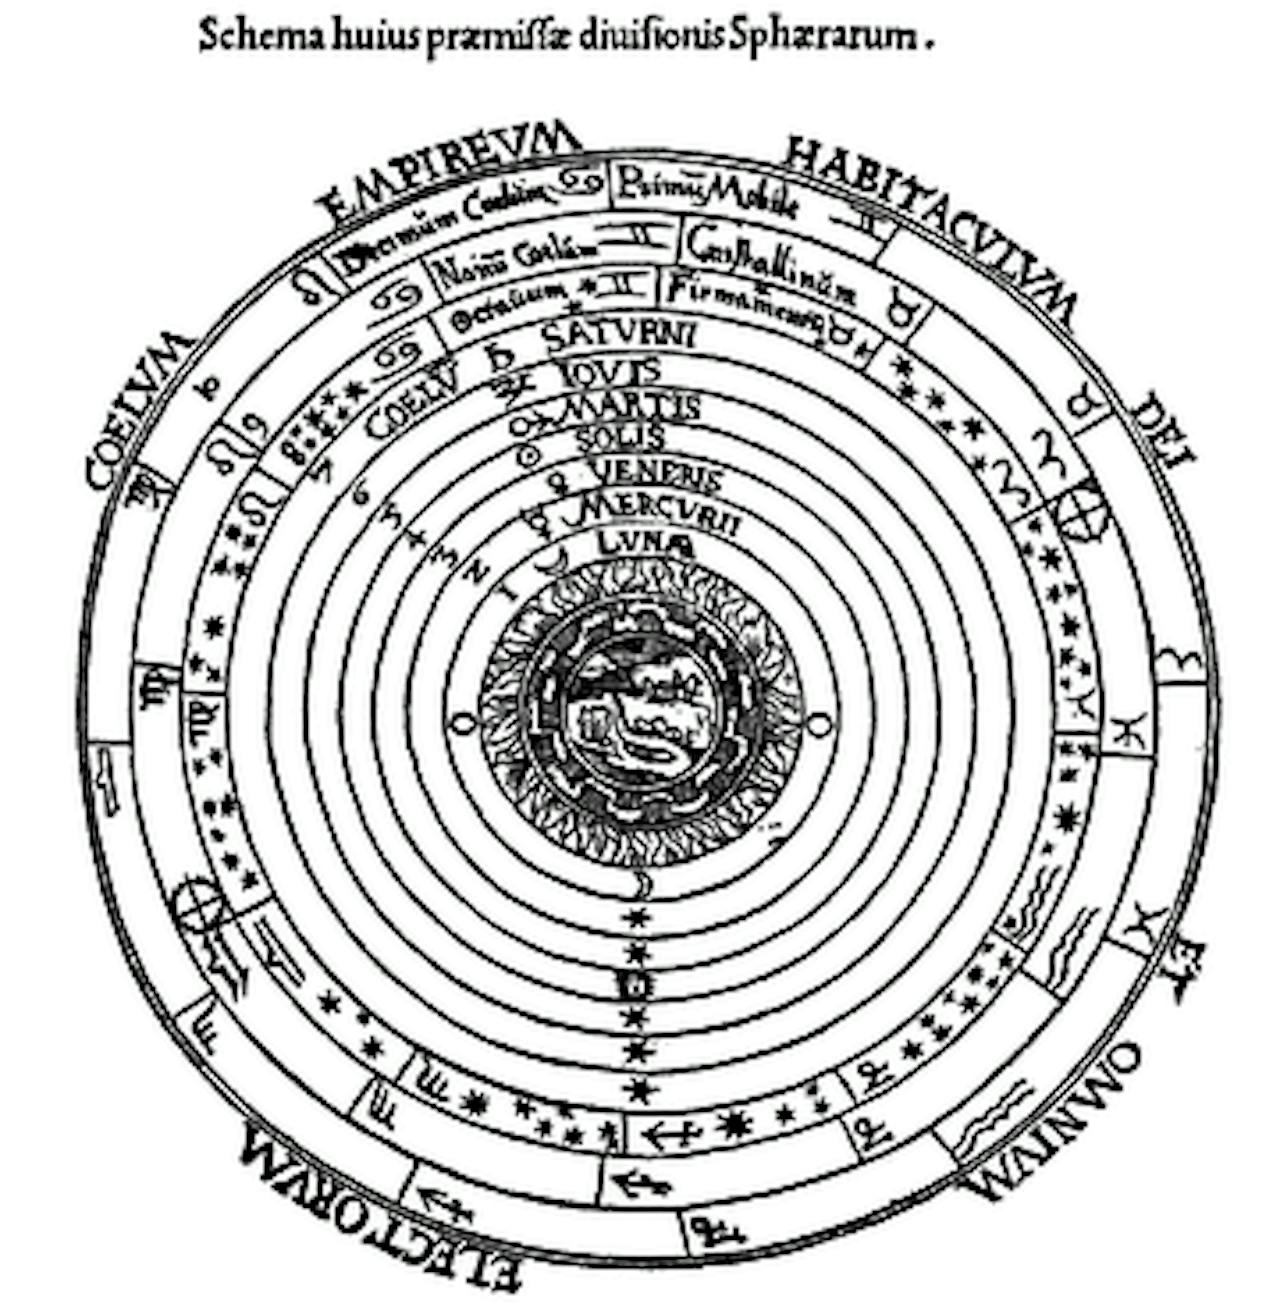 Schema met verschillende cirkels die de beweging van de planeten toont.